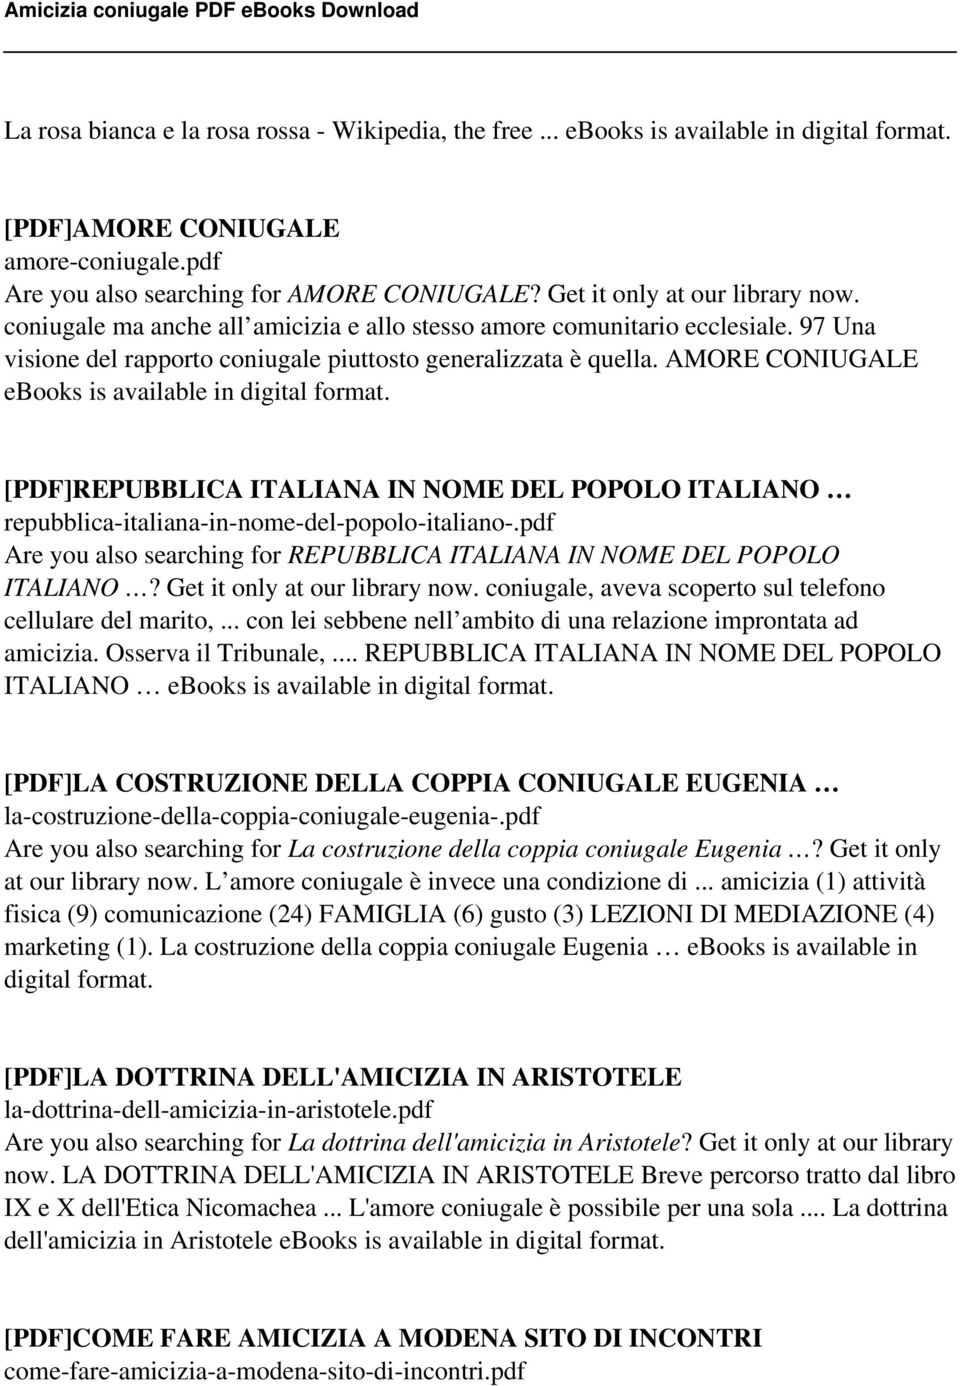 AMORE CONIUGALE ebooks is available in digital format. [PDF]REPUBBLICA ITALIANA IN NOME DEL POPOLO ITALIANO repubblica-italiana-in-nome-del-popolo-italiano-.